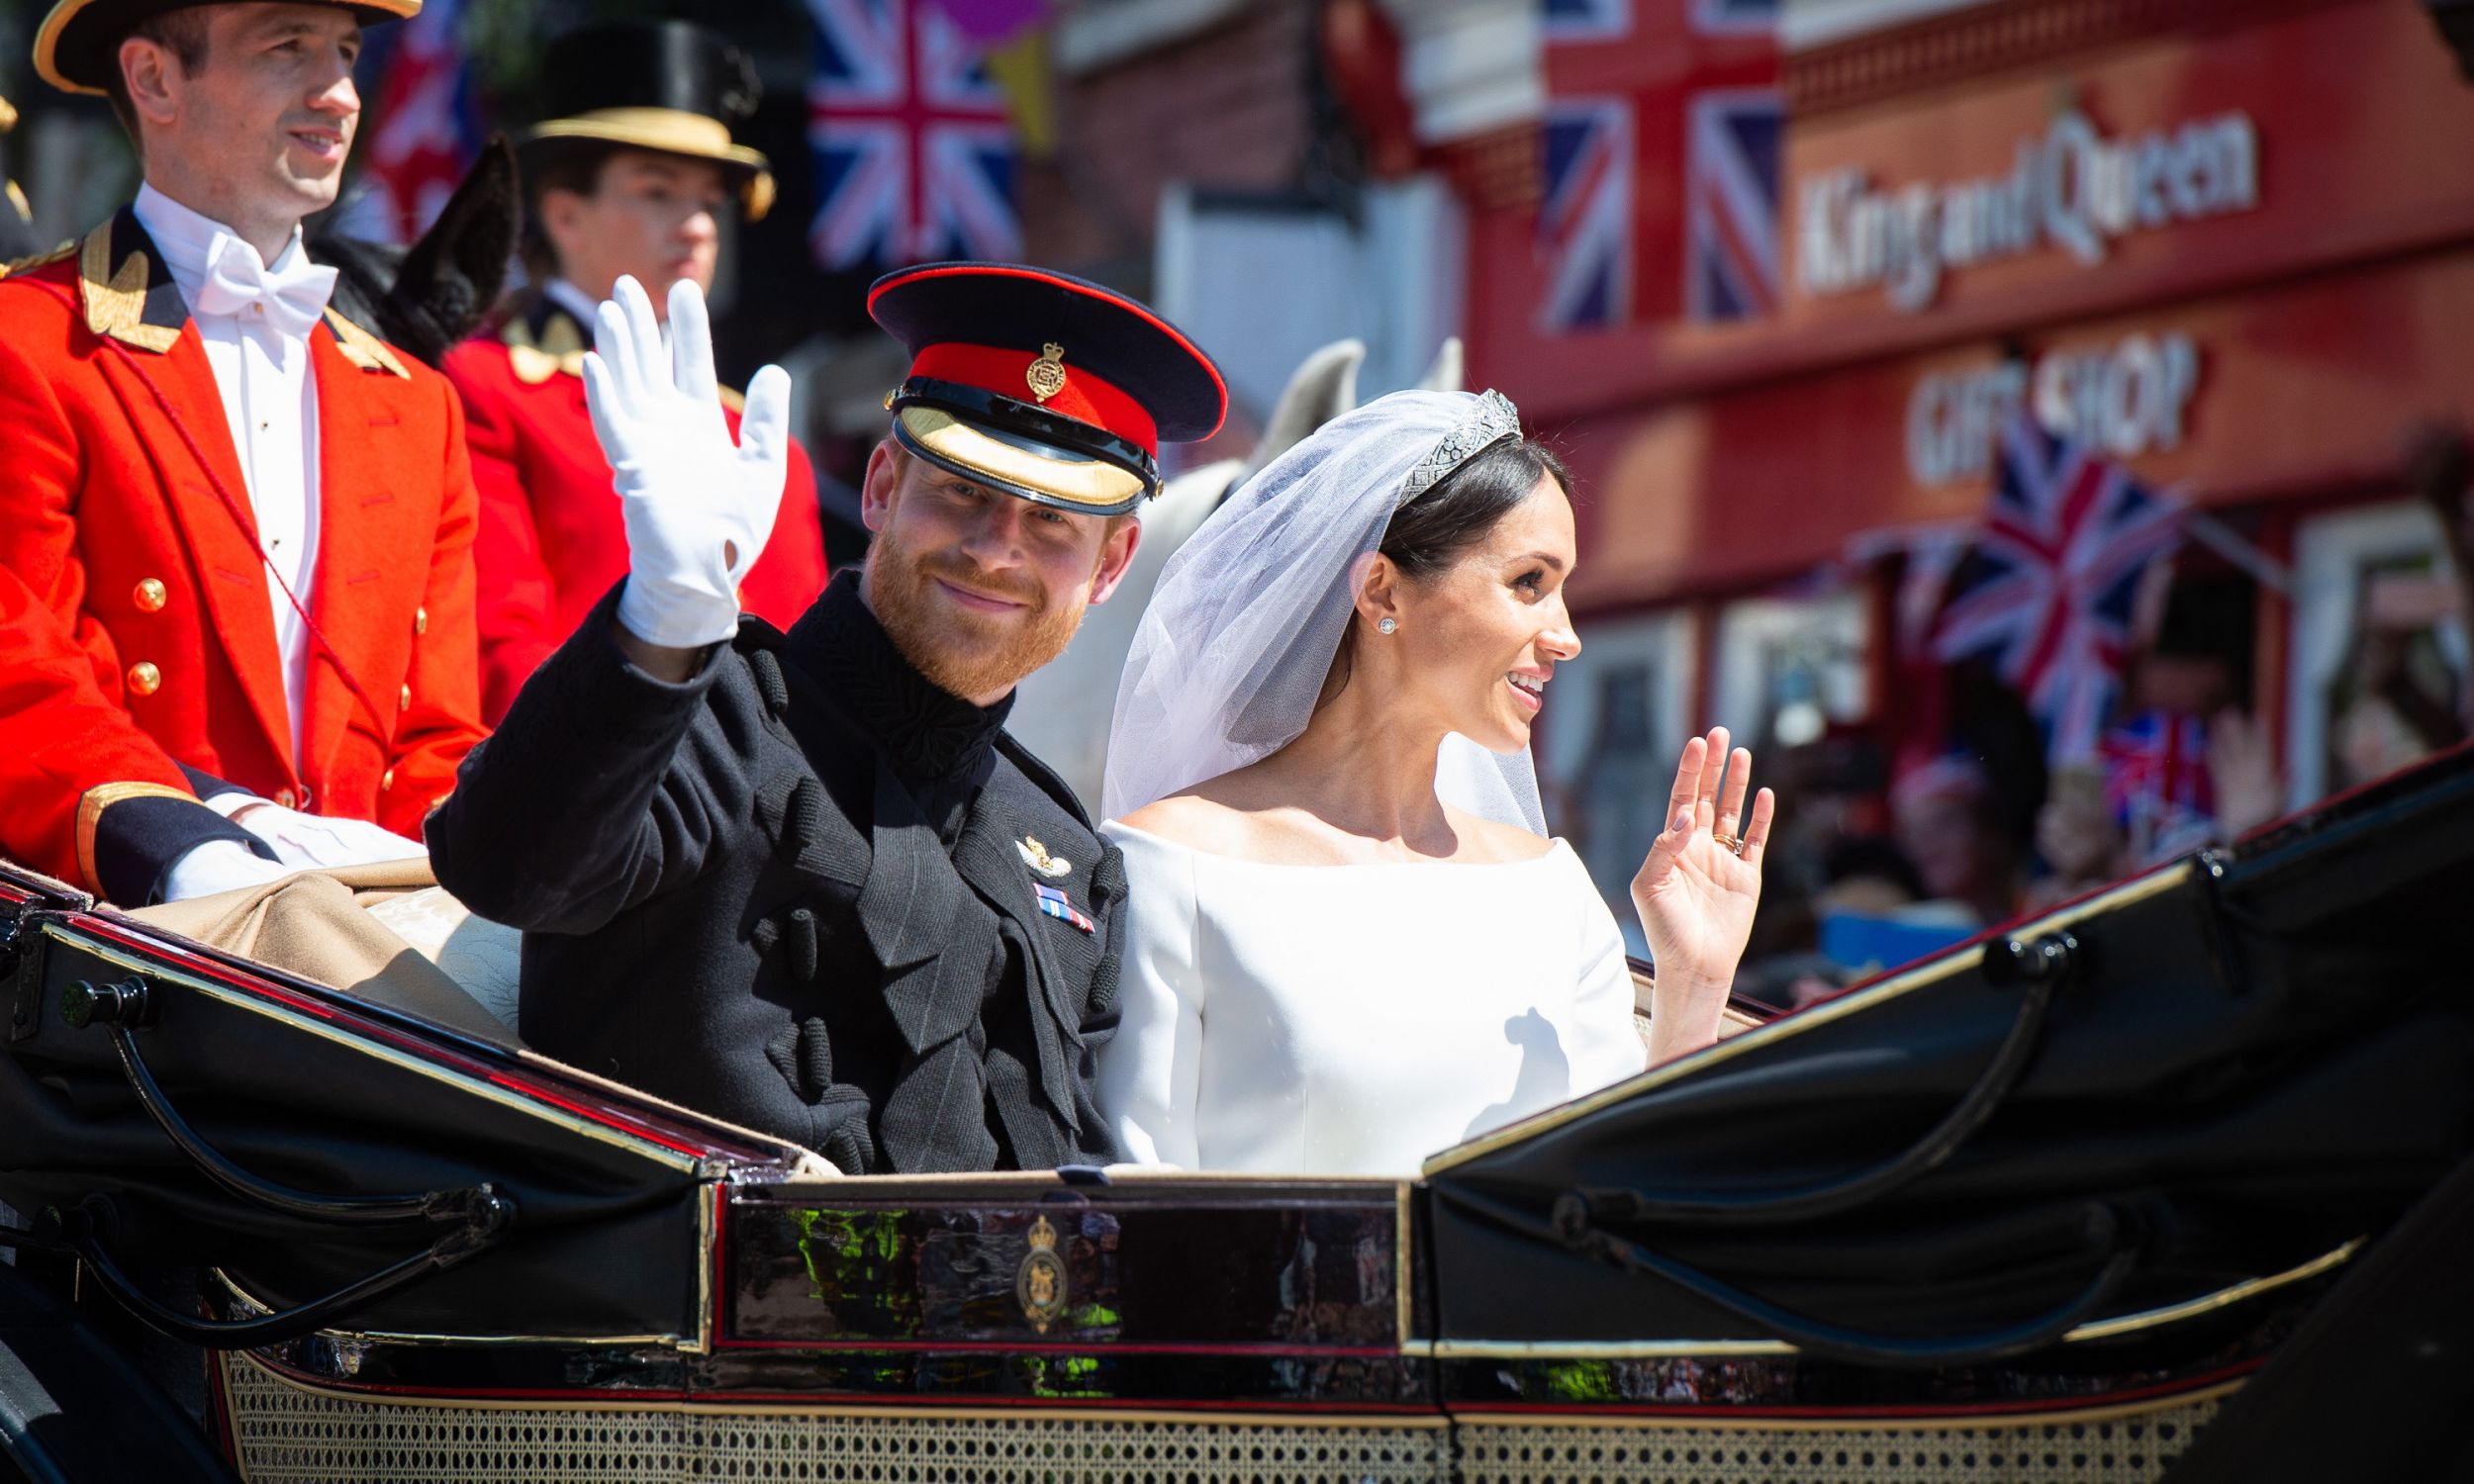 Harry i Meghan, czyli książę i księżna Sussex, podczas procesji po królewskiej ceremonii ślubnej w kaplicy św. Jerzego w Windsor Castl, 19 maja 2018 r. Królewska Marynarka Wojenna, Brytyjska Armia i Królewskie Siły Powietrzne zapewniają ceremonialne wsparcie. Fot: PAP / EPA.